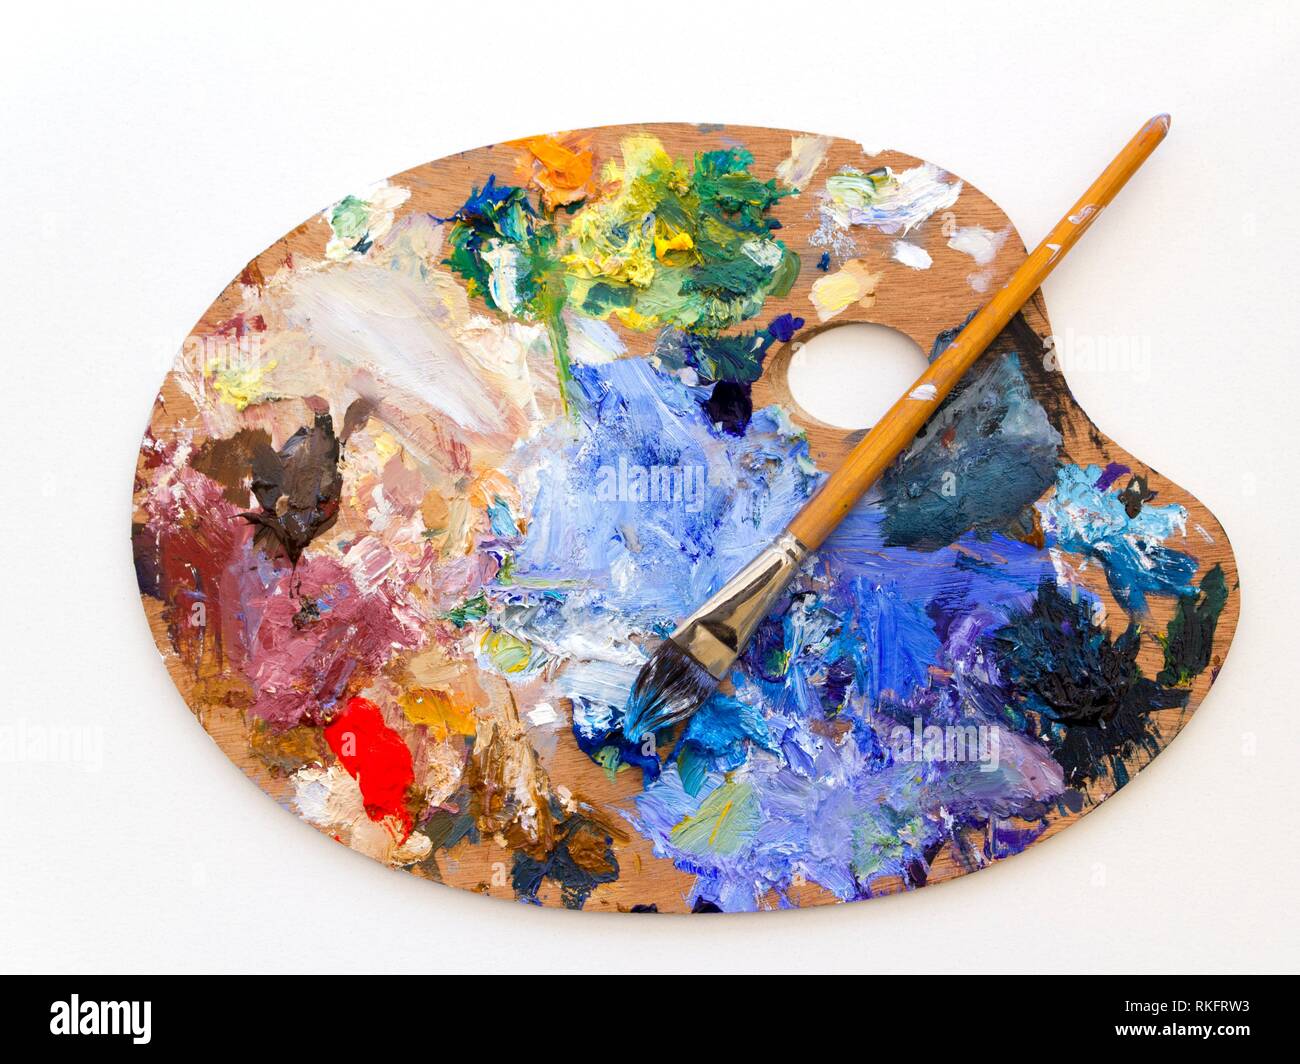 Artistas colorida paleta de pintura de aceite y cepillos de cerca sobre fondo liso. Foto de stock